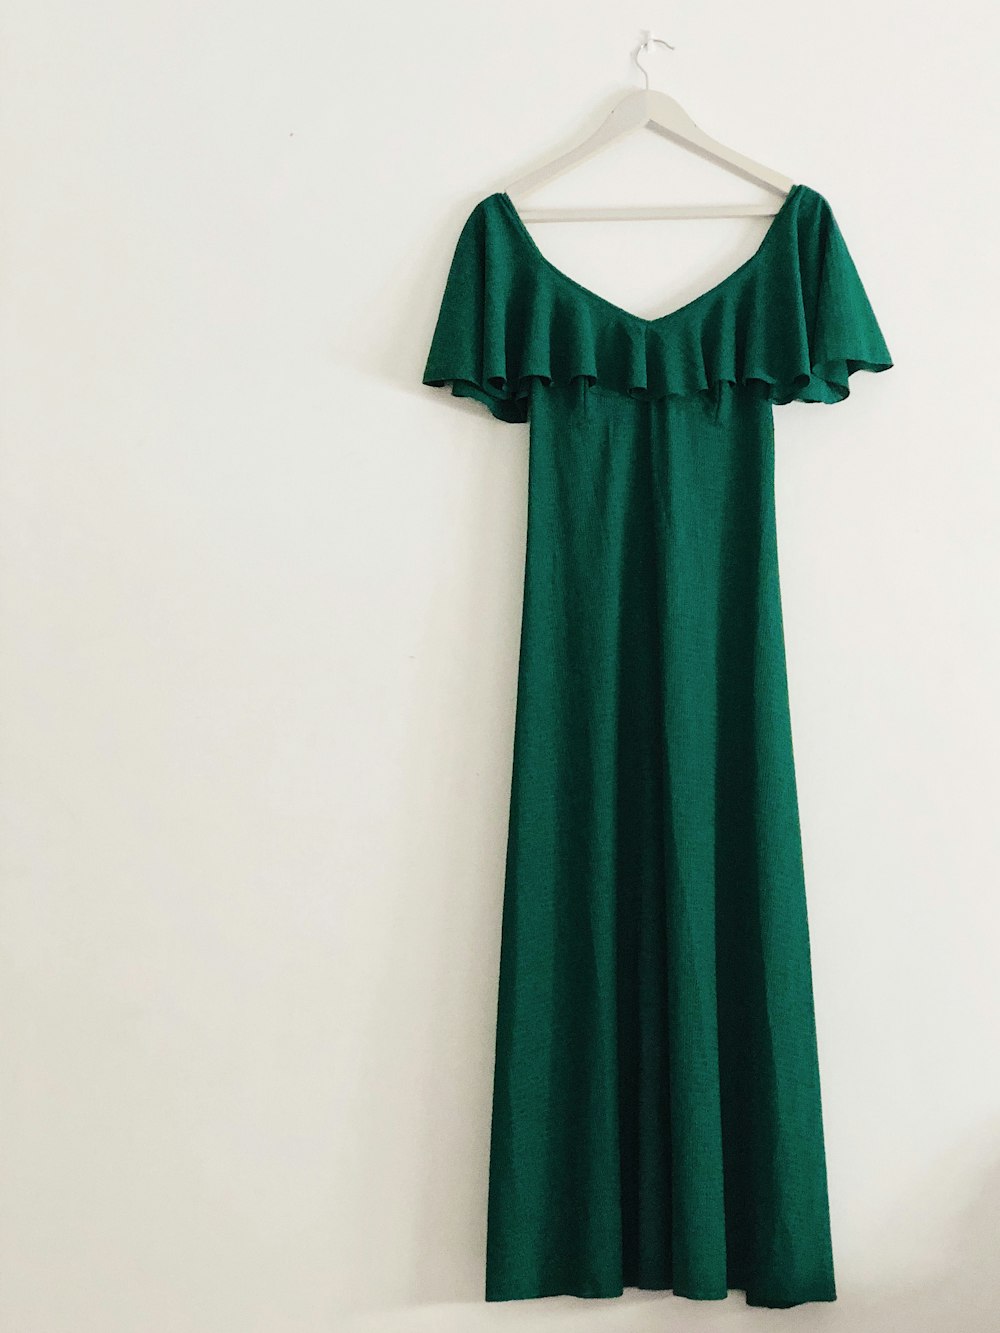 vestido sin mangas verde colgado en la pared blanca